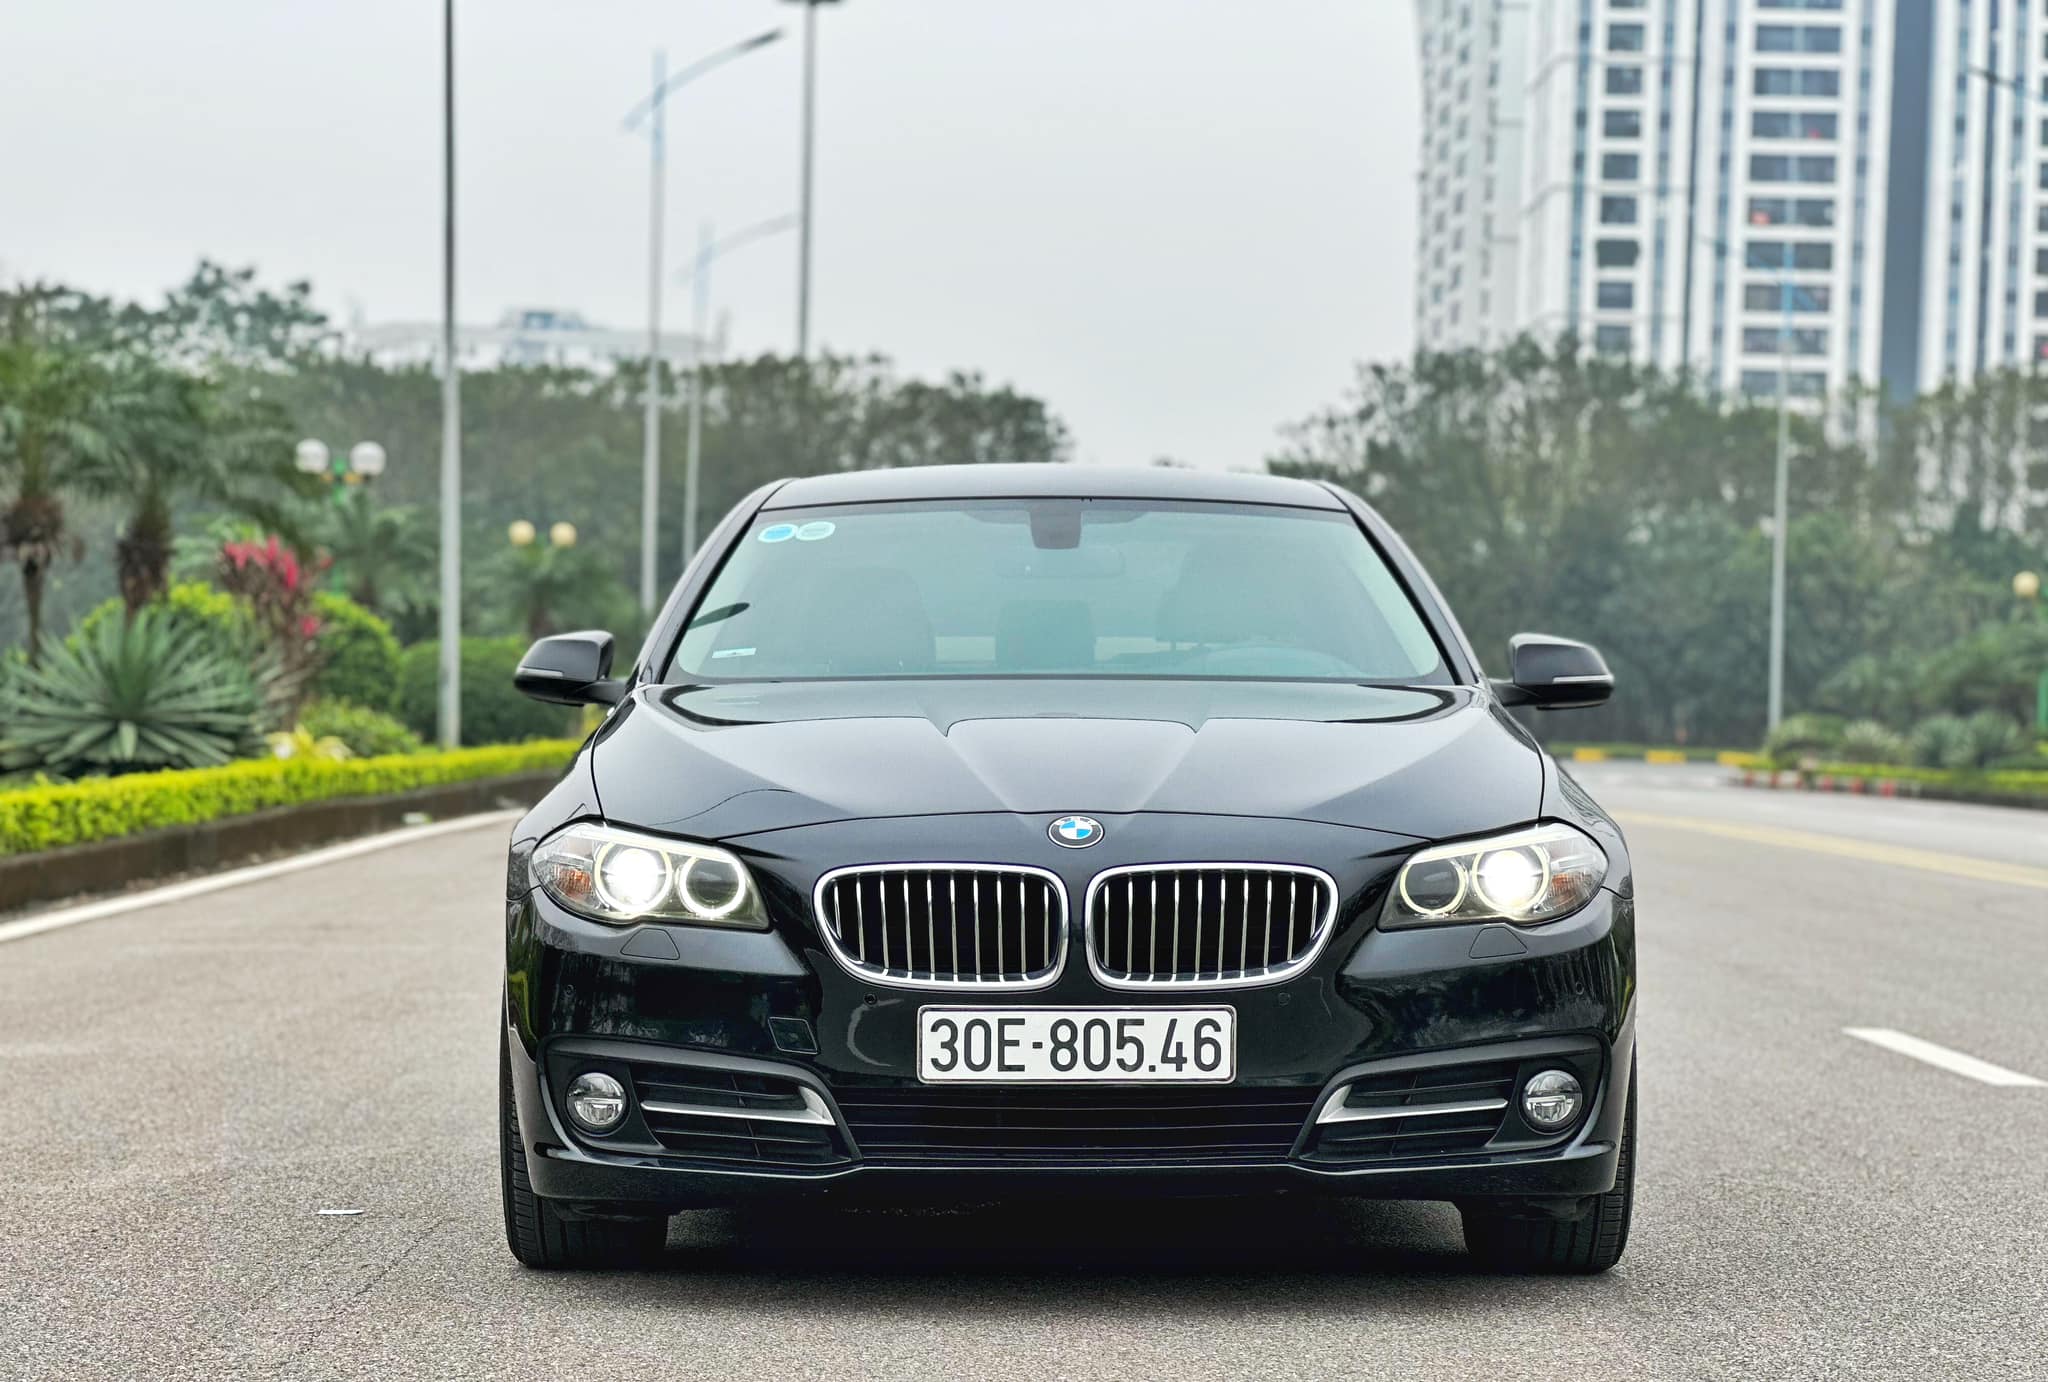 BMW 520i đời 2015 giá 700 triệu đồng, có nên mua?